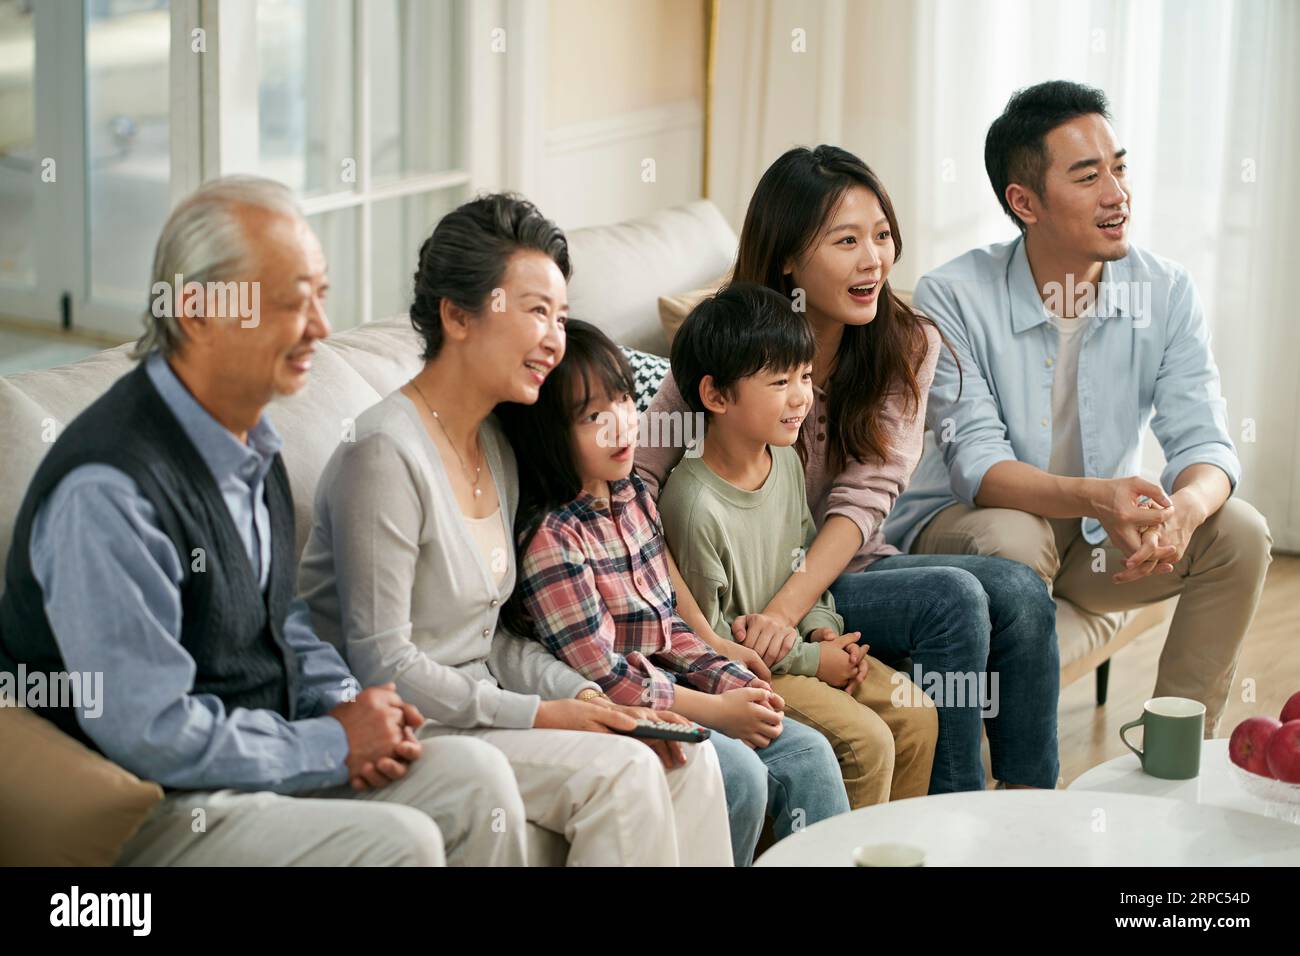 Eine asiatische Familie der 3. Generation, die zu Hause auf der Couch sitzt und zusammen fernsieht, glücklich und lächelnd Stockfoto